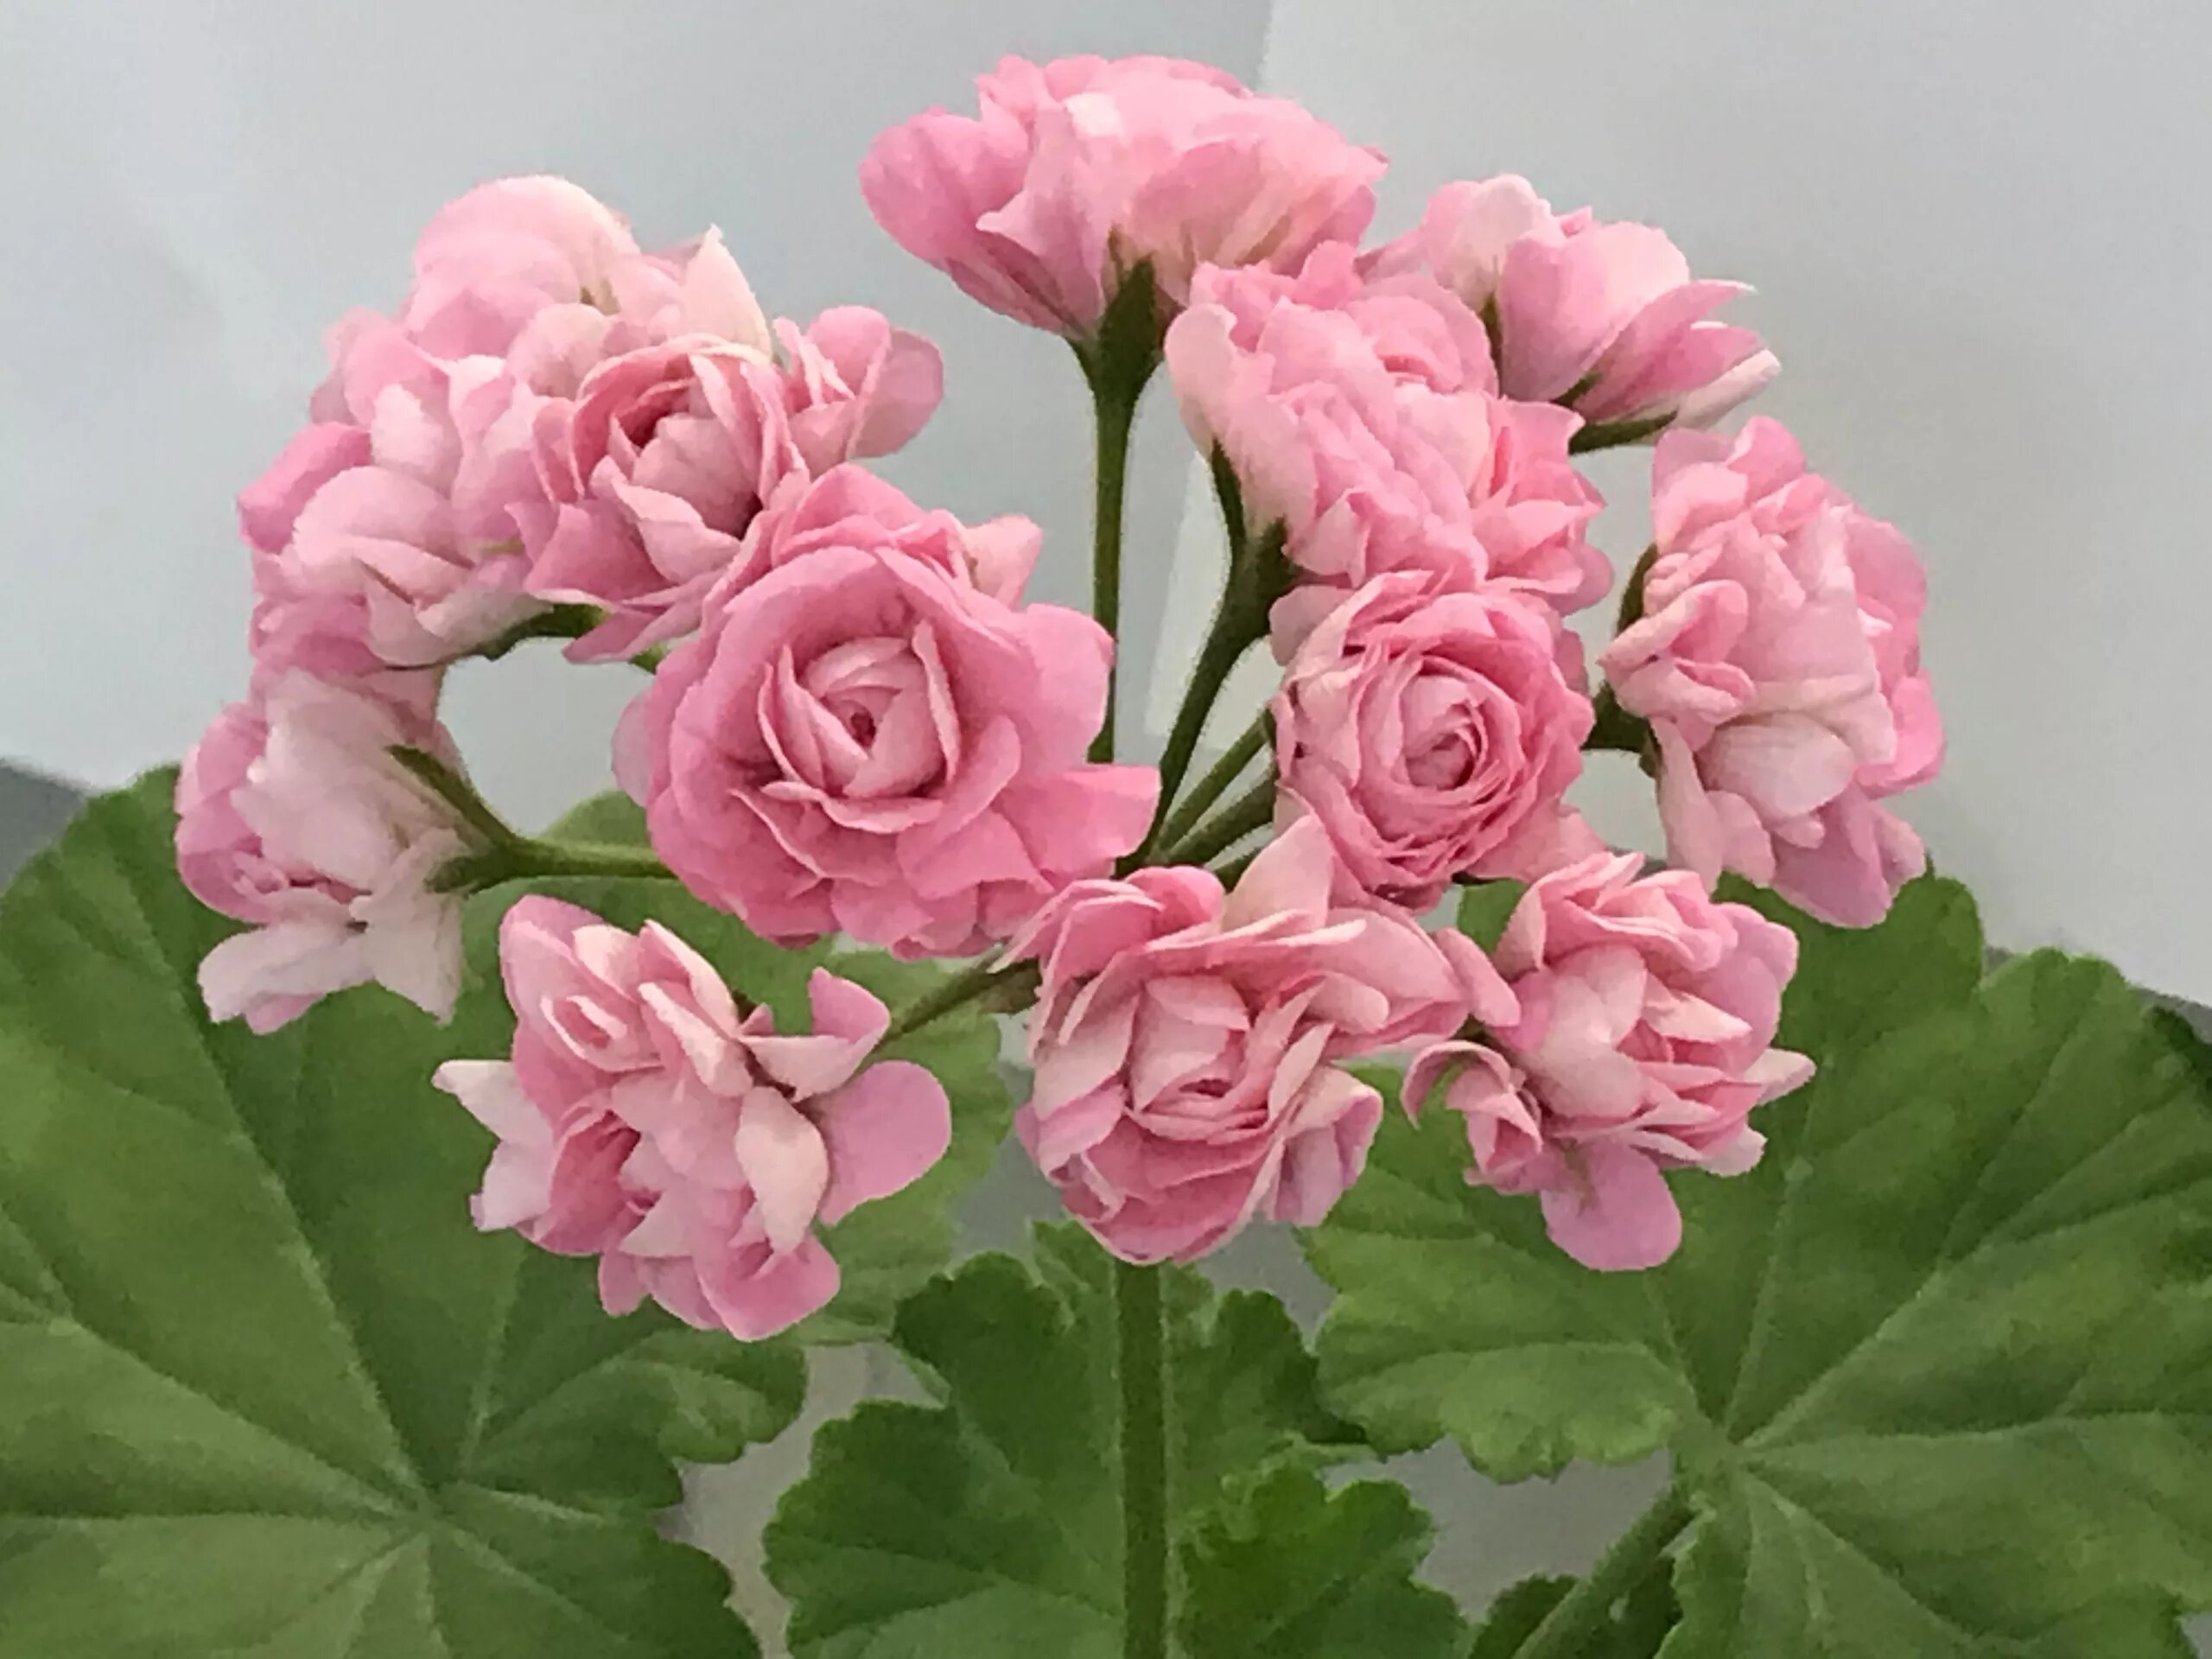 Формы герани. Пеларгония Swanland Pink. Пеларгония (Pelargonium). Shannon Corr пеларгония. Пеларгония Swanland Pink Australien Pink Rosebud.